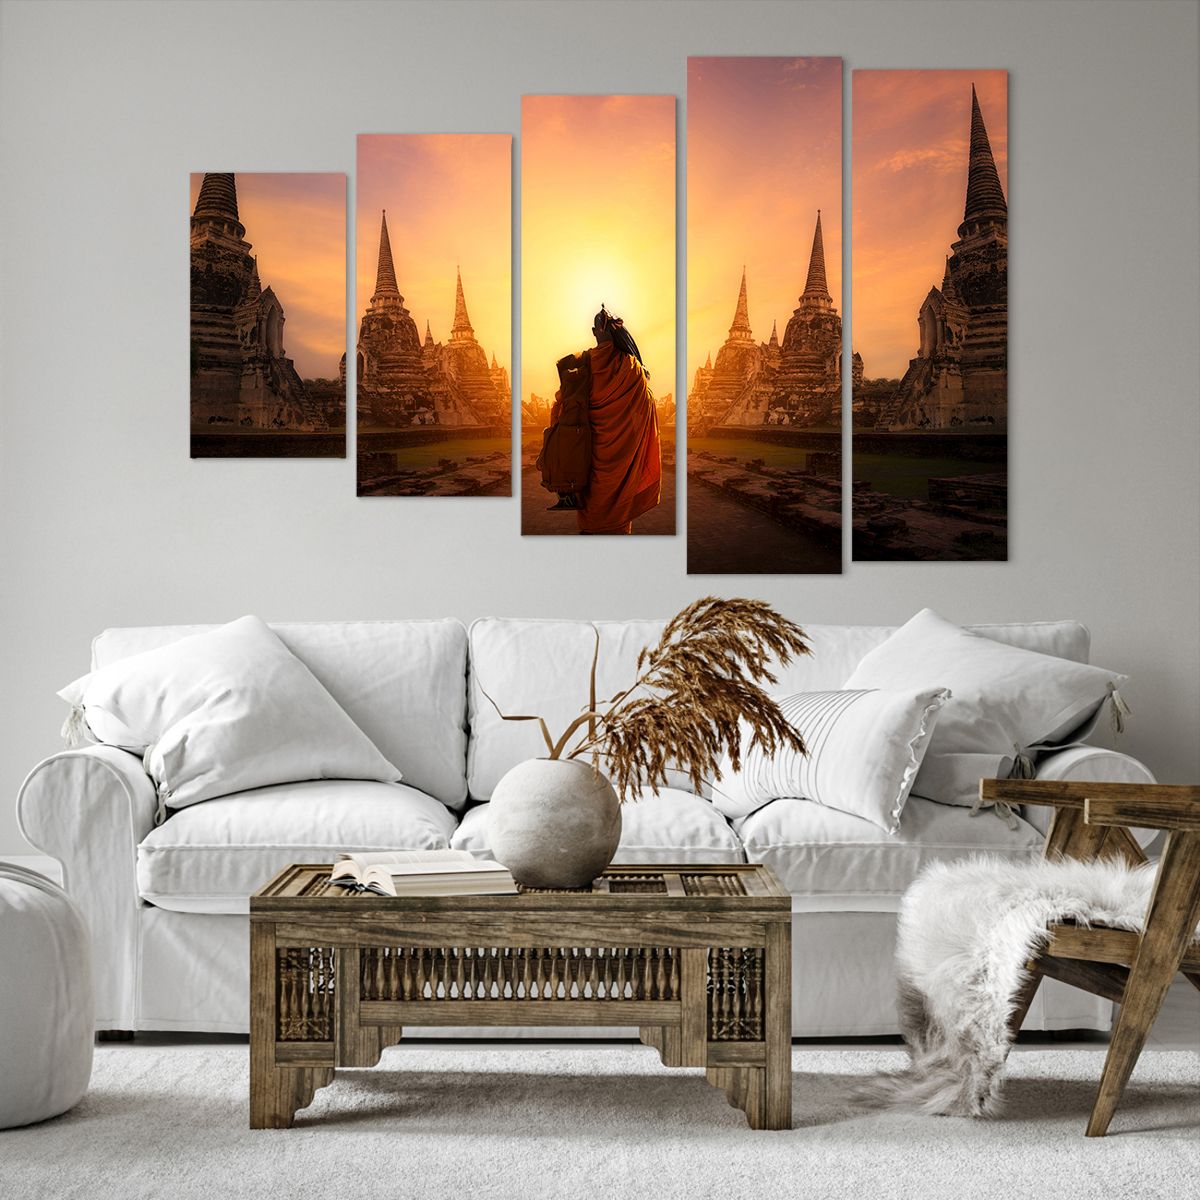 Bild auf Leinwand Thailand, Bild auf Leinwand Buddhismus, Bild auf Leinwand Tempel, Bild auf Leinwand Mönch, Bild auf Leinwand Meditation